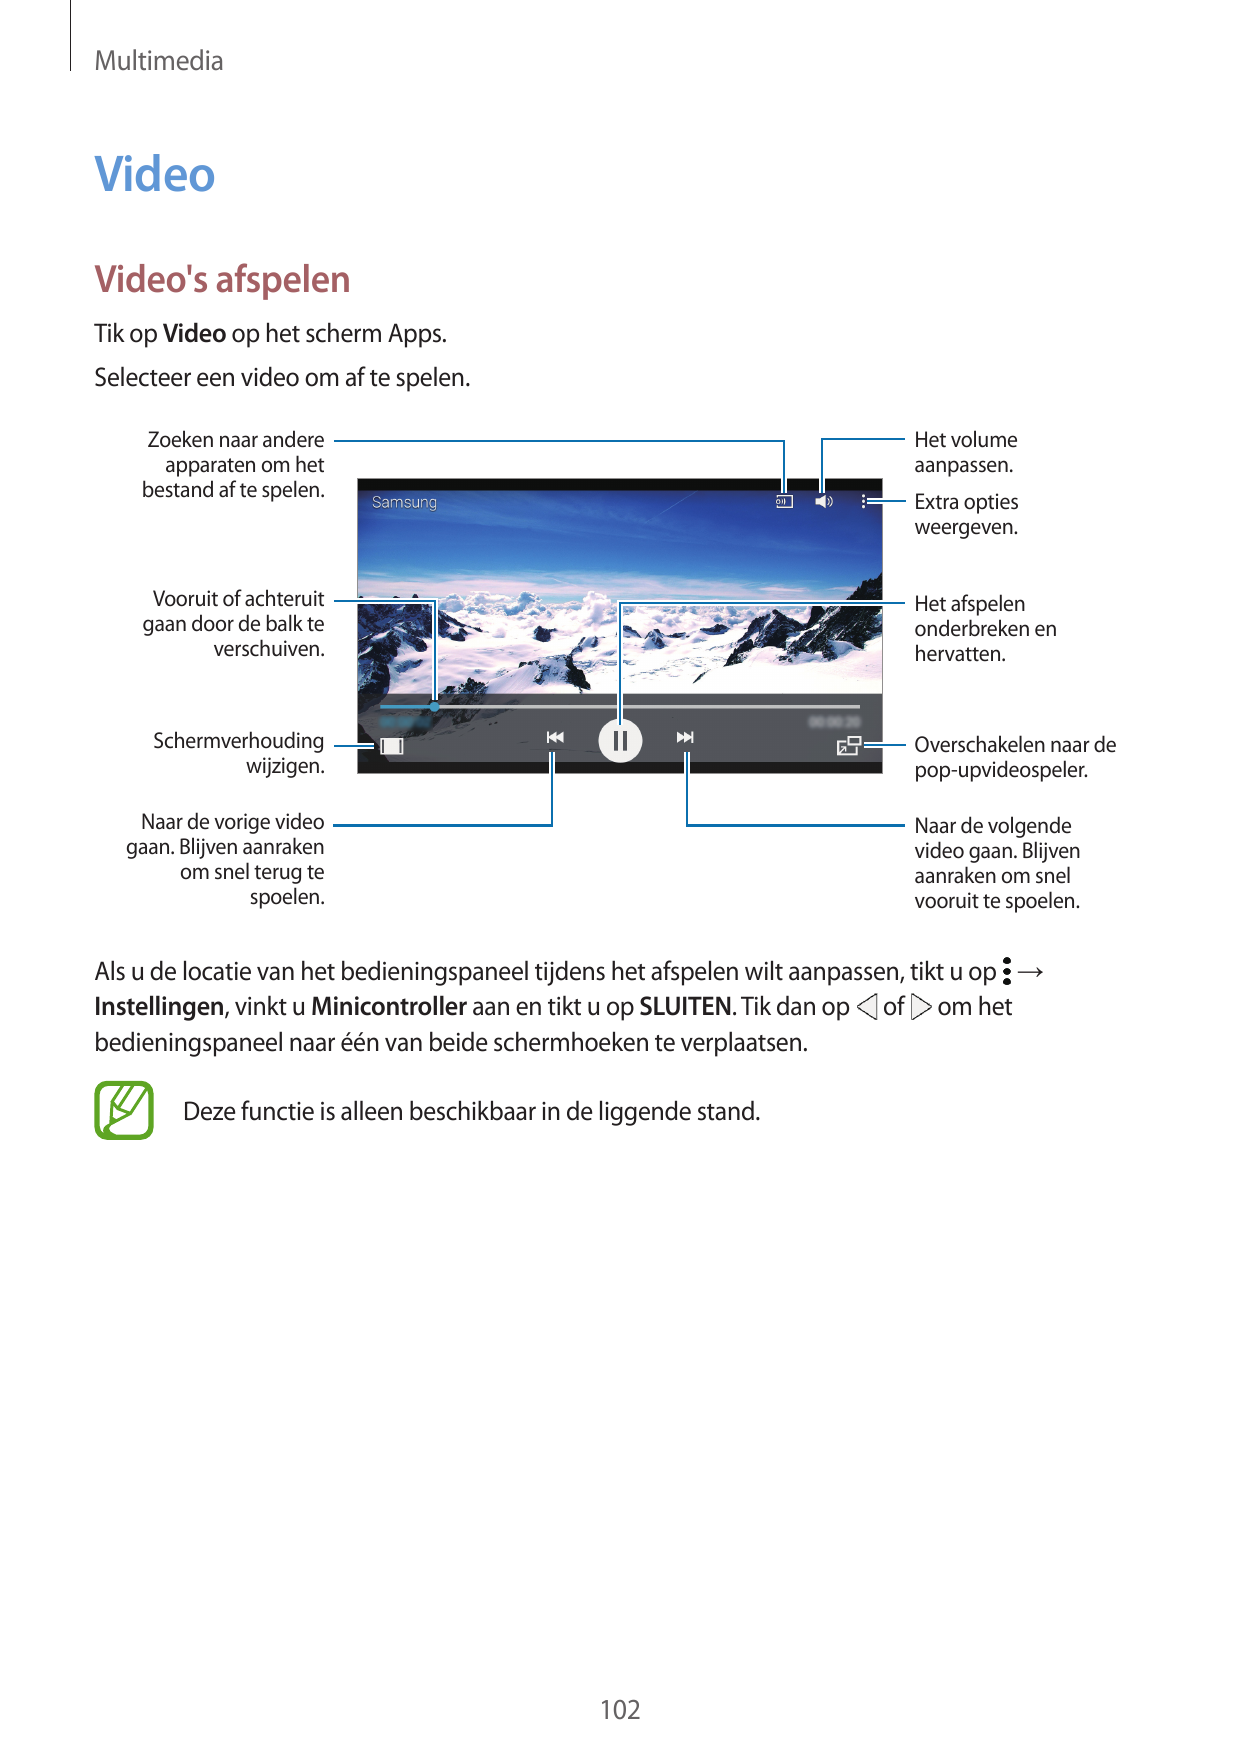 MultimediaVideoVideo's afspelenTik op Video op het scherm Apps.Selecteer een video om af te spelen.Zoeken naar andereapparaten o